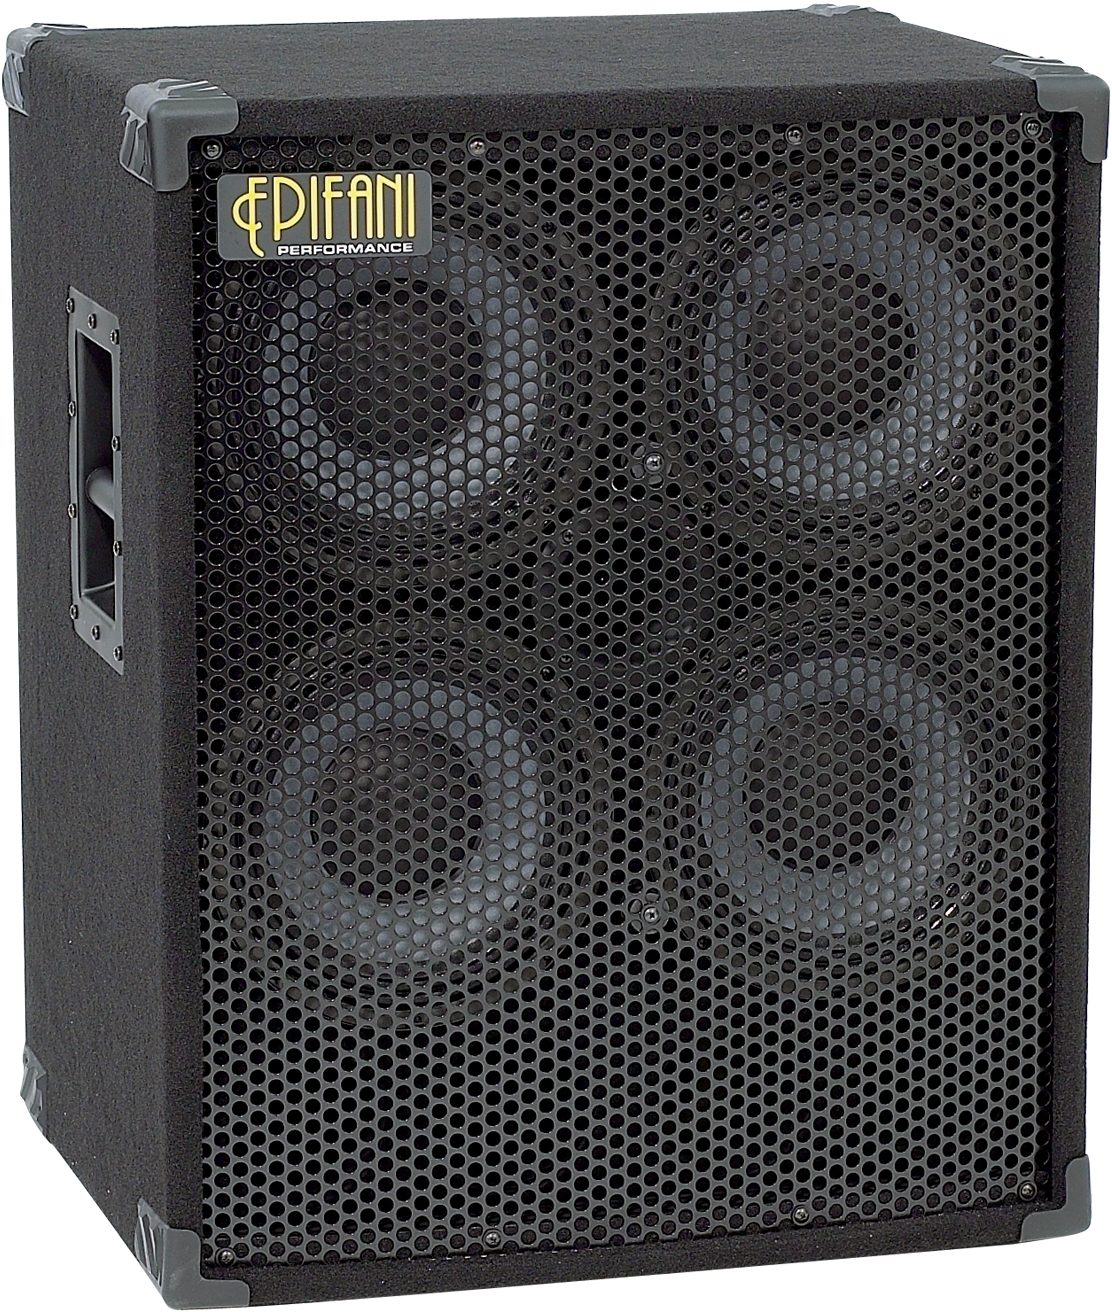 Epifani PS410 Bass Cabinet | zZounds